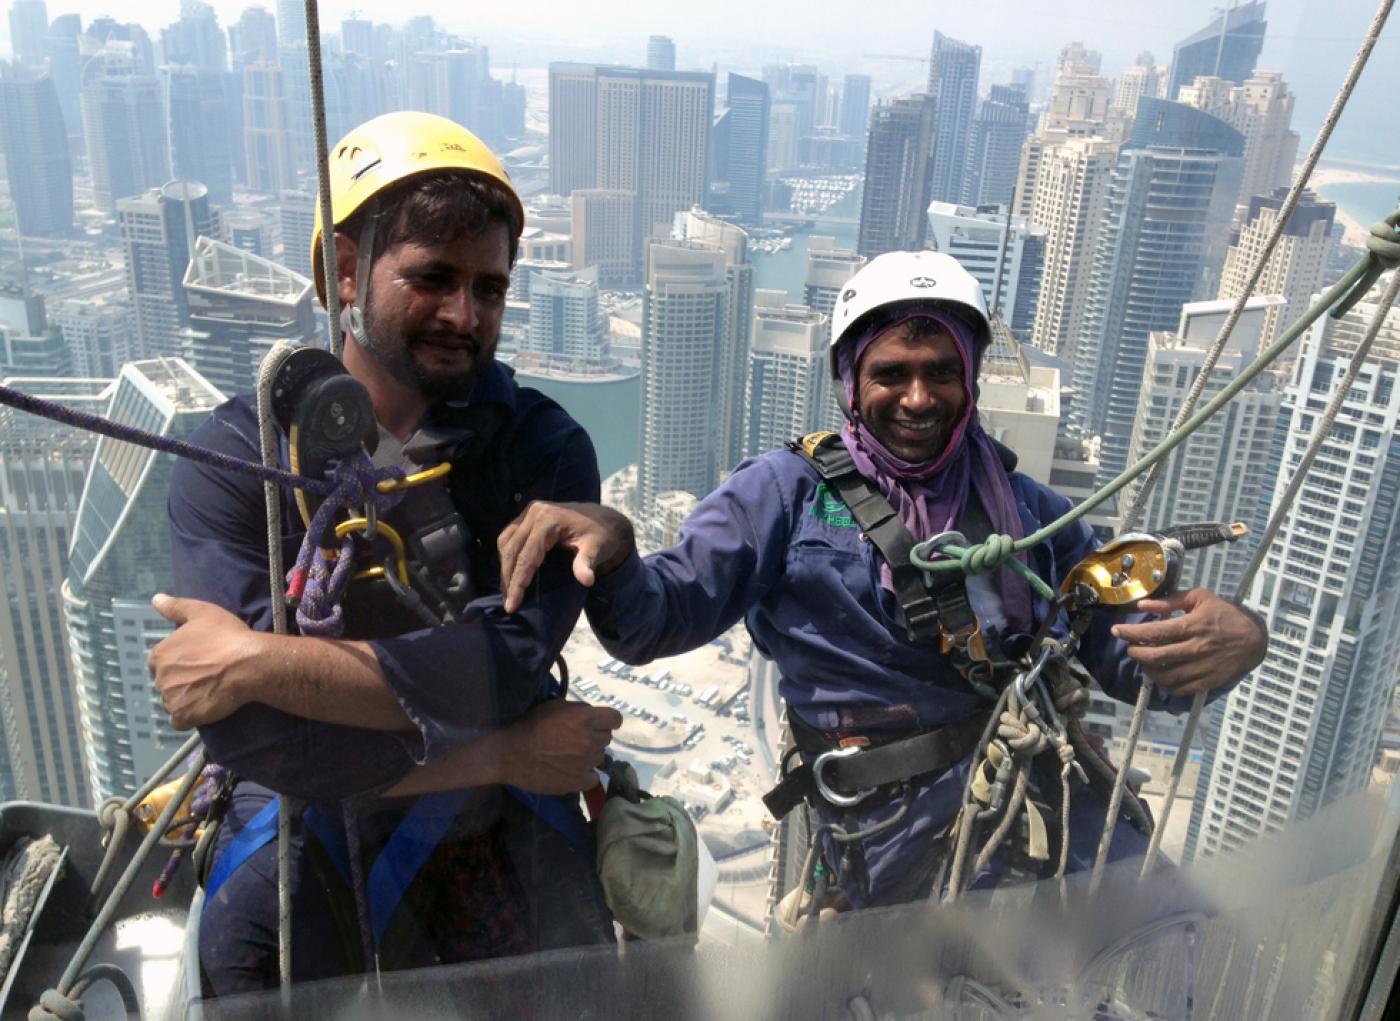 Nettoyeurs de vitres pakistanais à Dubaï (Émirats arabes unis), le 6 septembre 2014 (AFP)